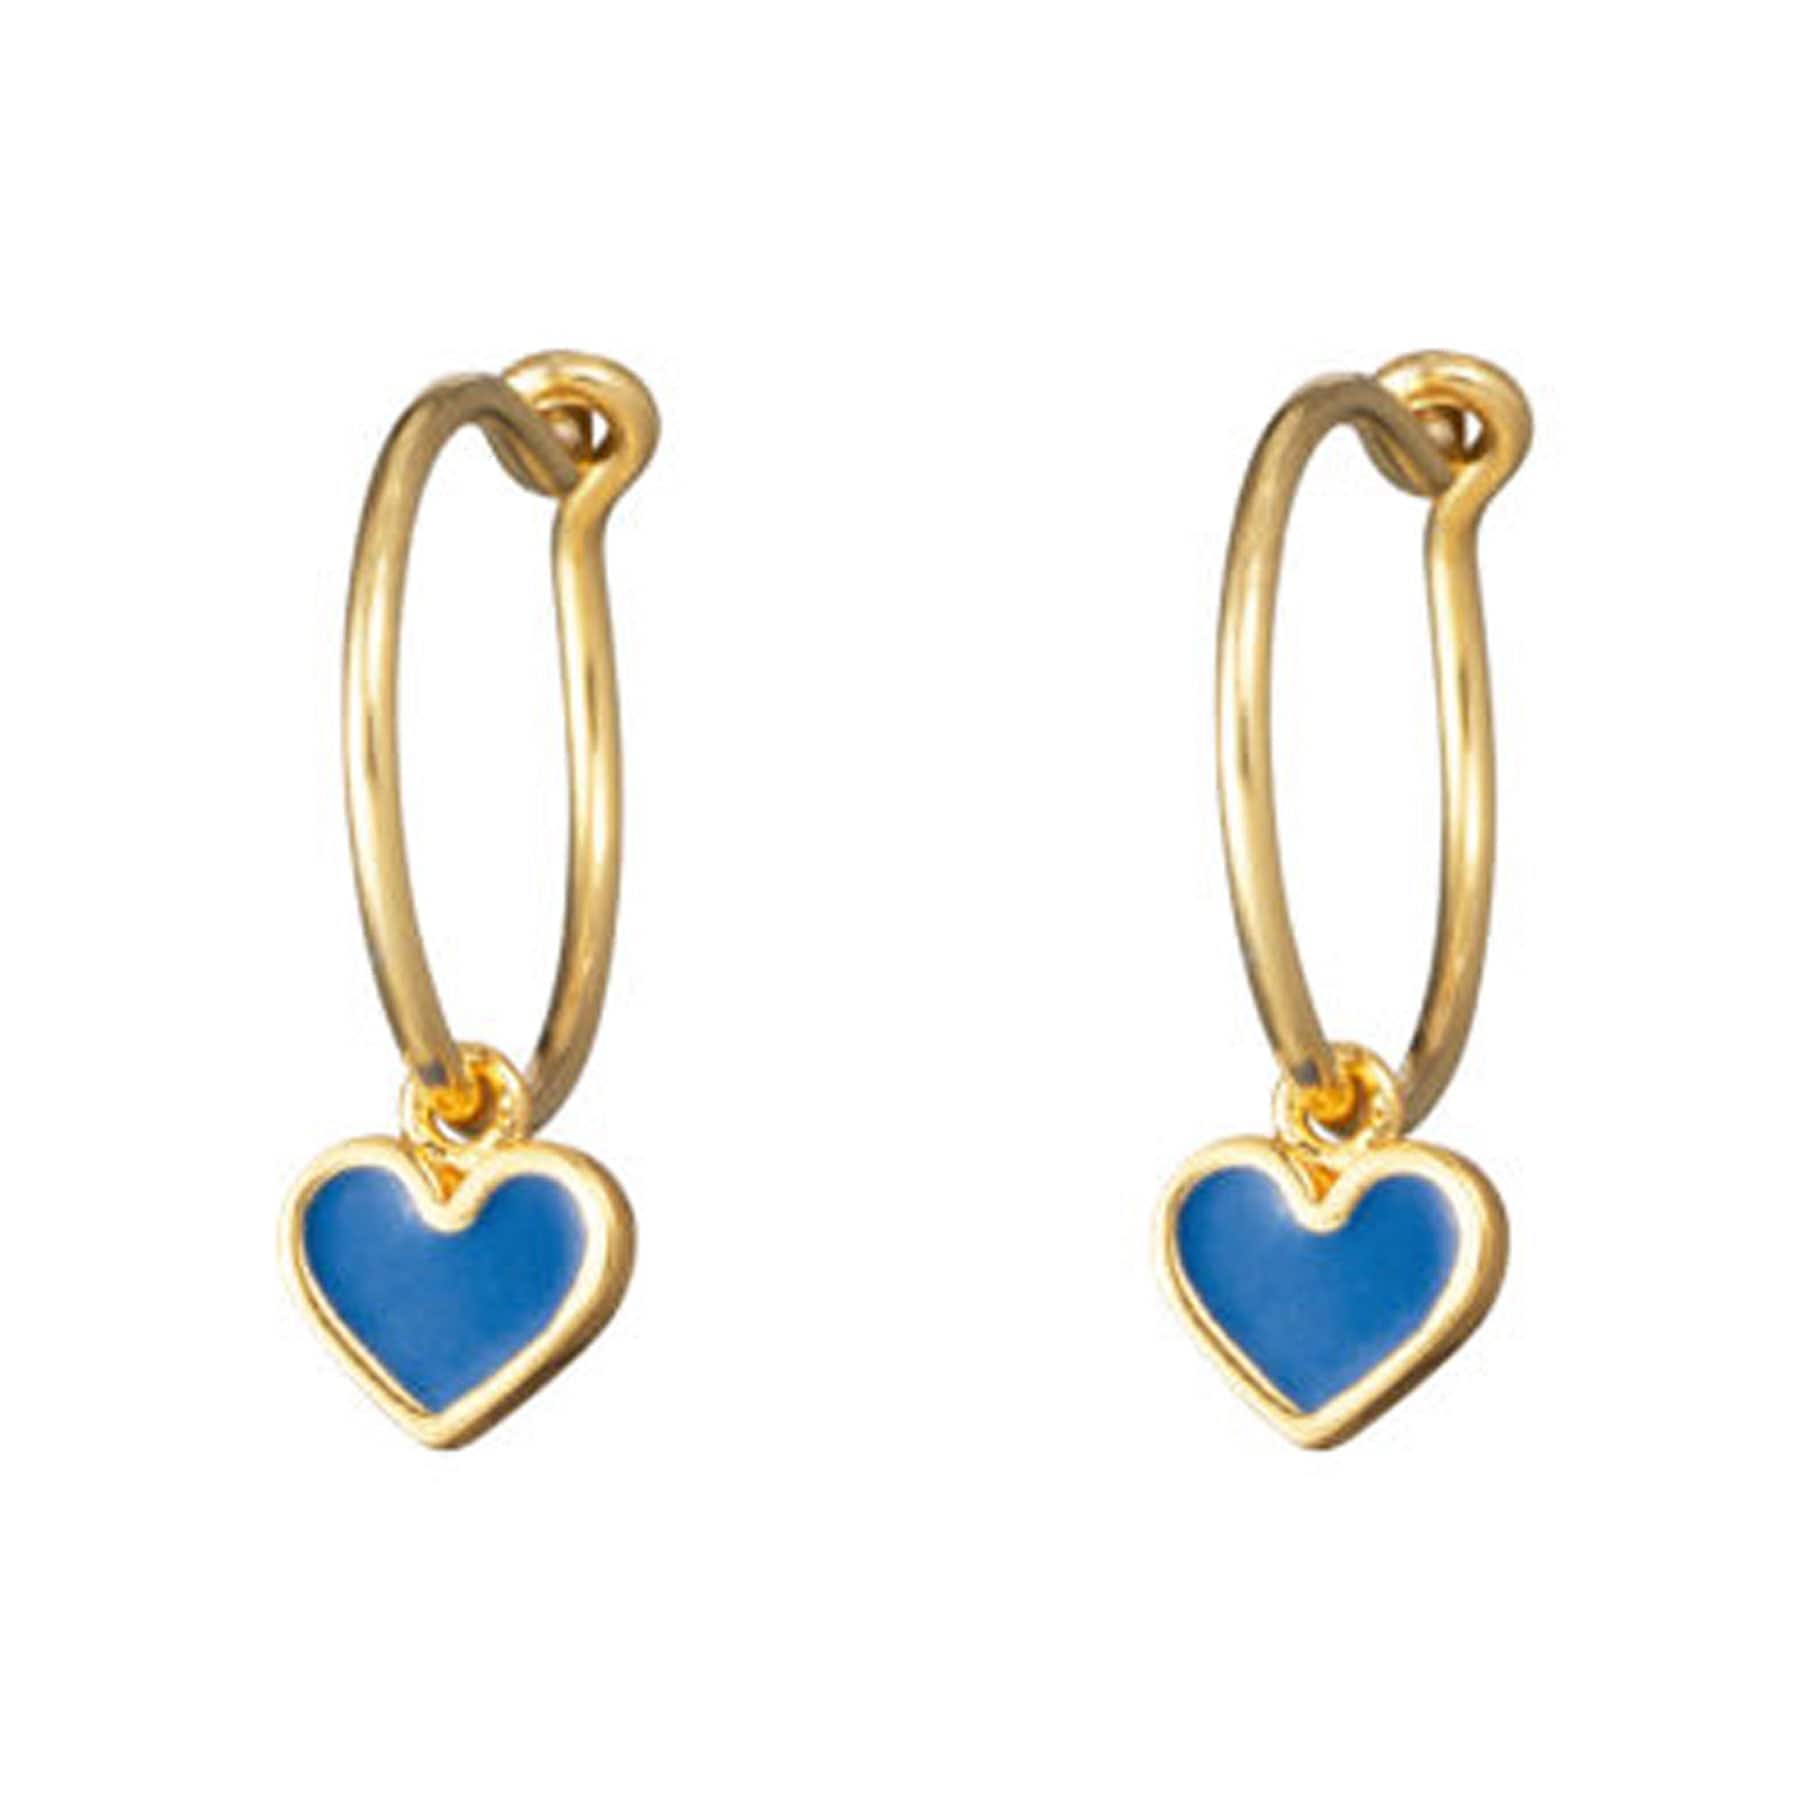 Eve heart huggie earrings